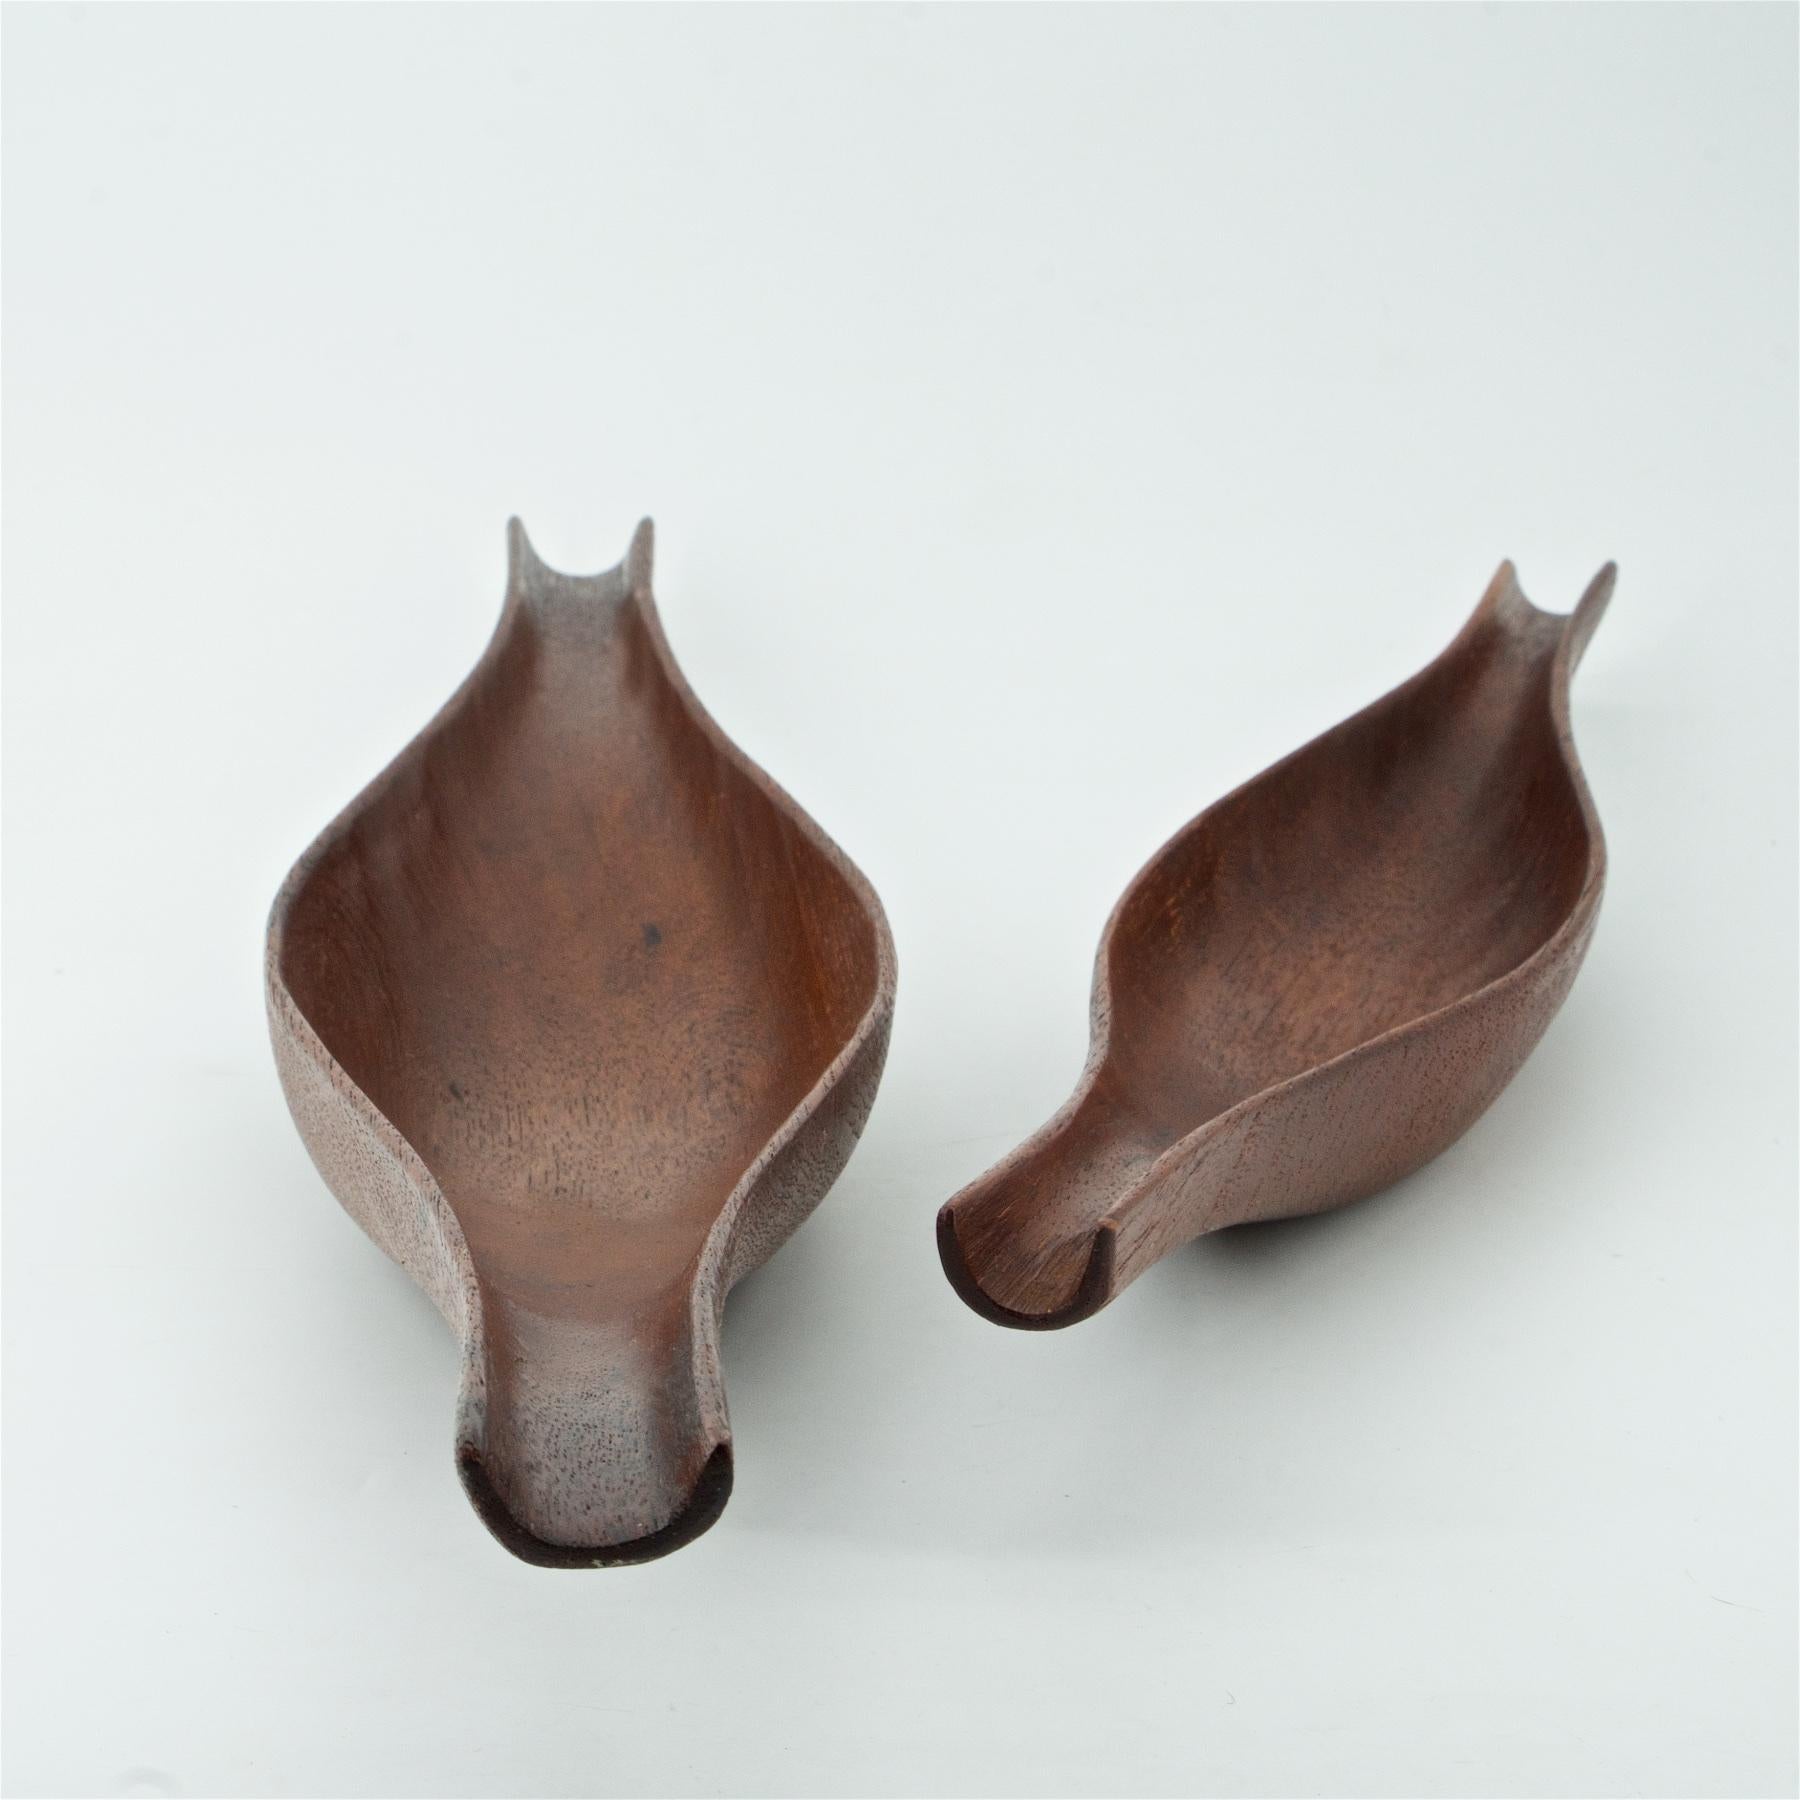 Oiled 1950s Scandinavian Stig Sandqvist Hand Carved Teak Canoe Bowls Sculptures Design For Sale